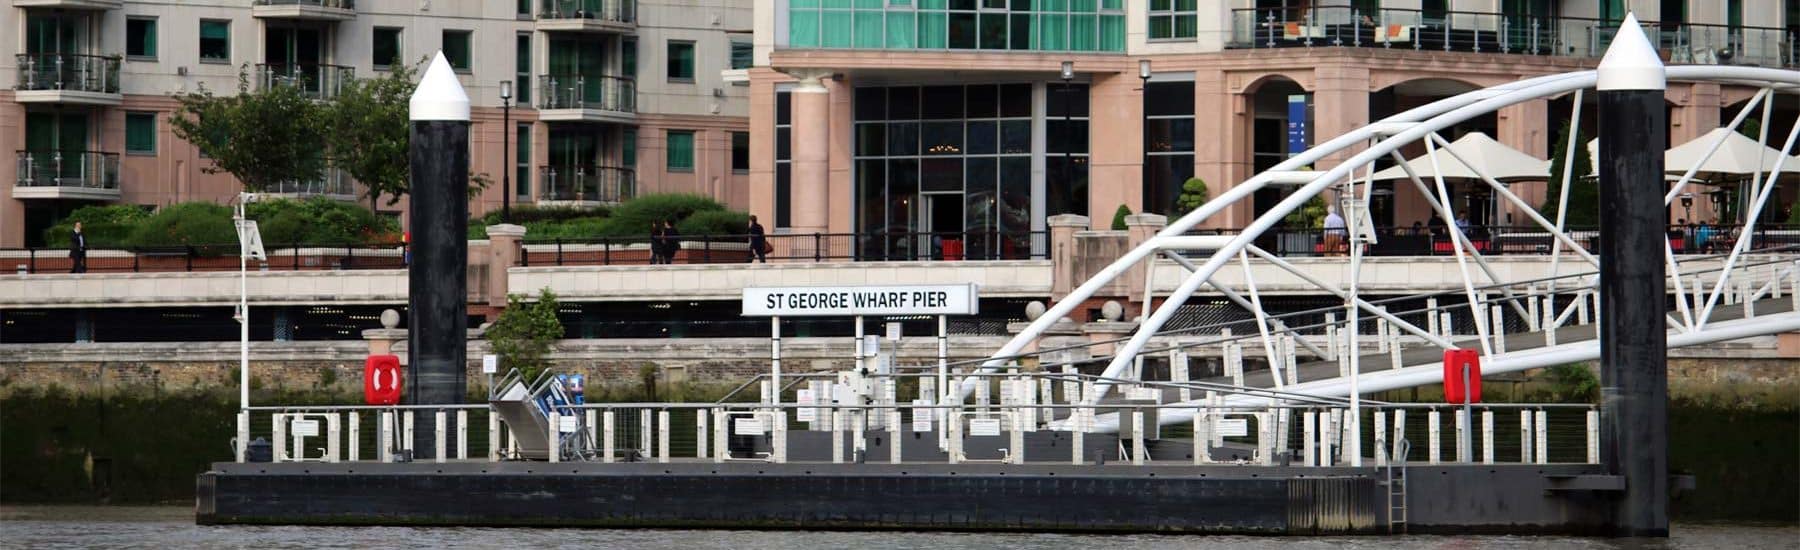 St. George Wharf Pier